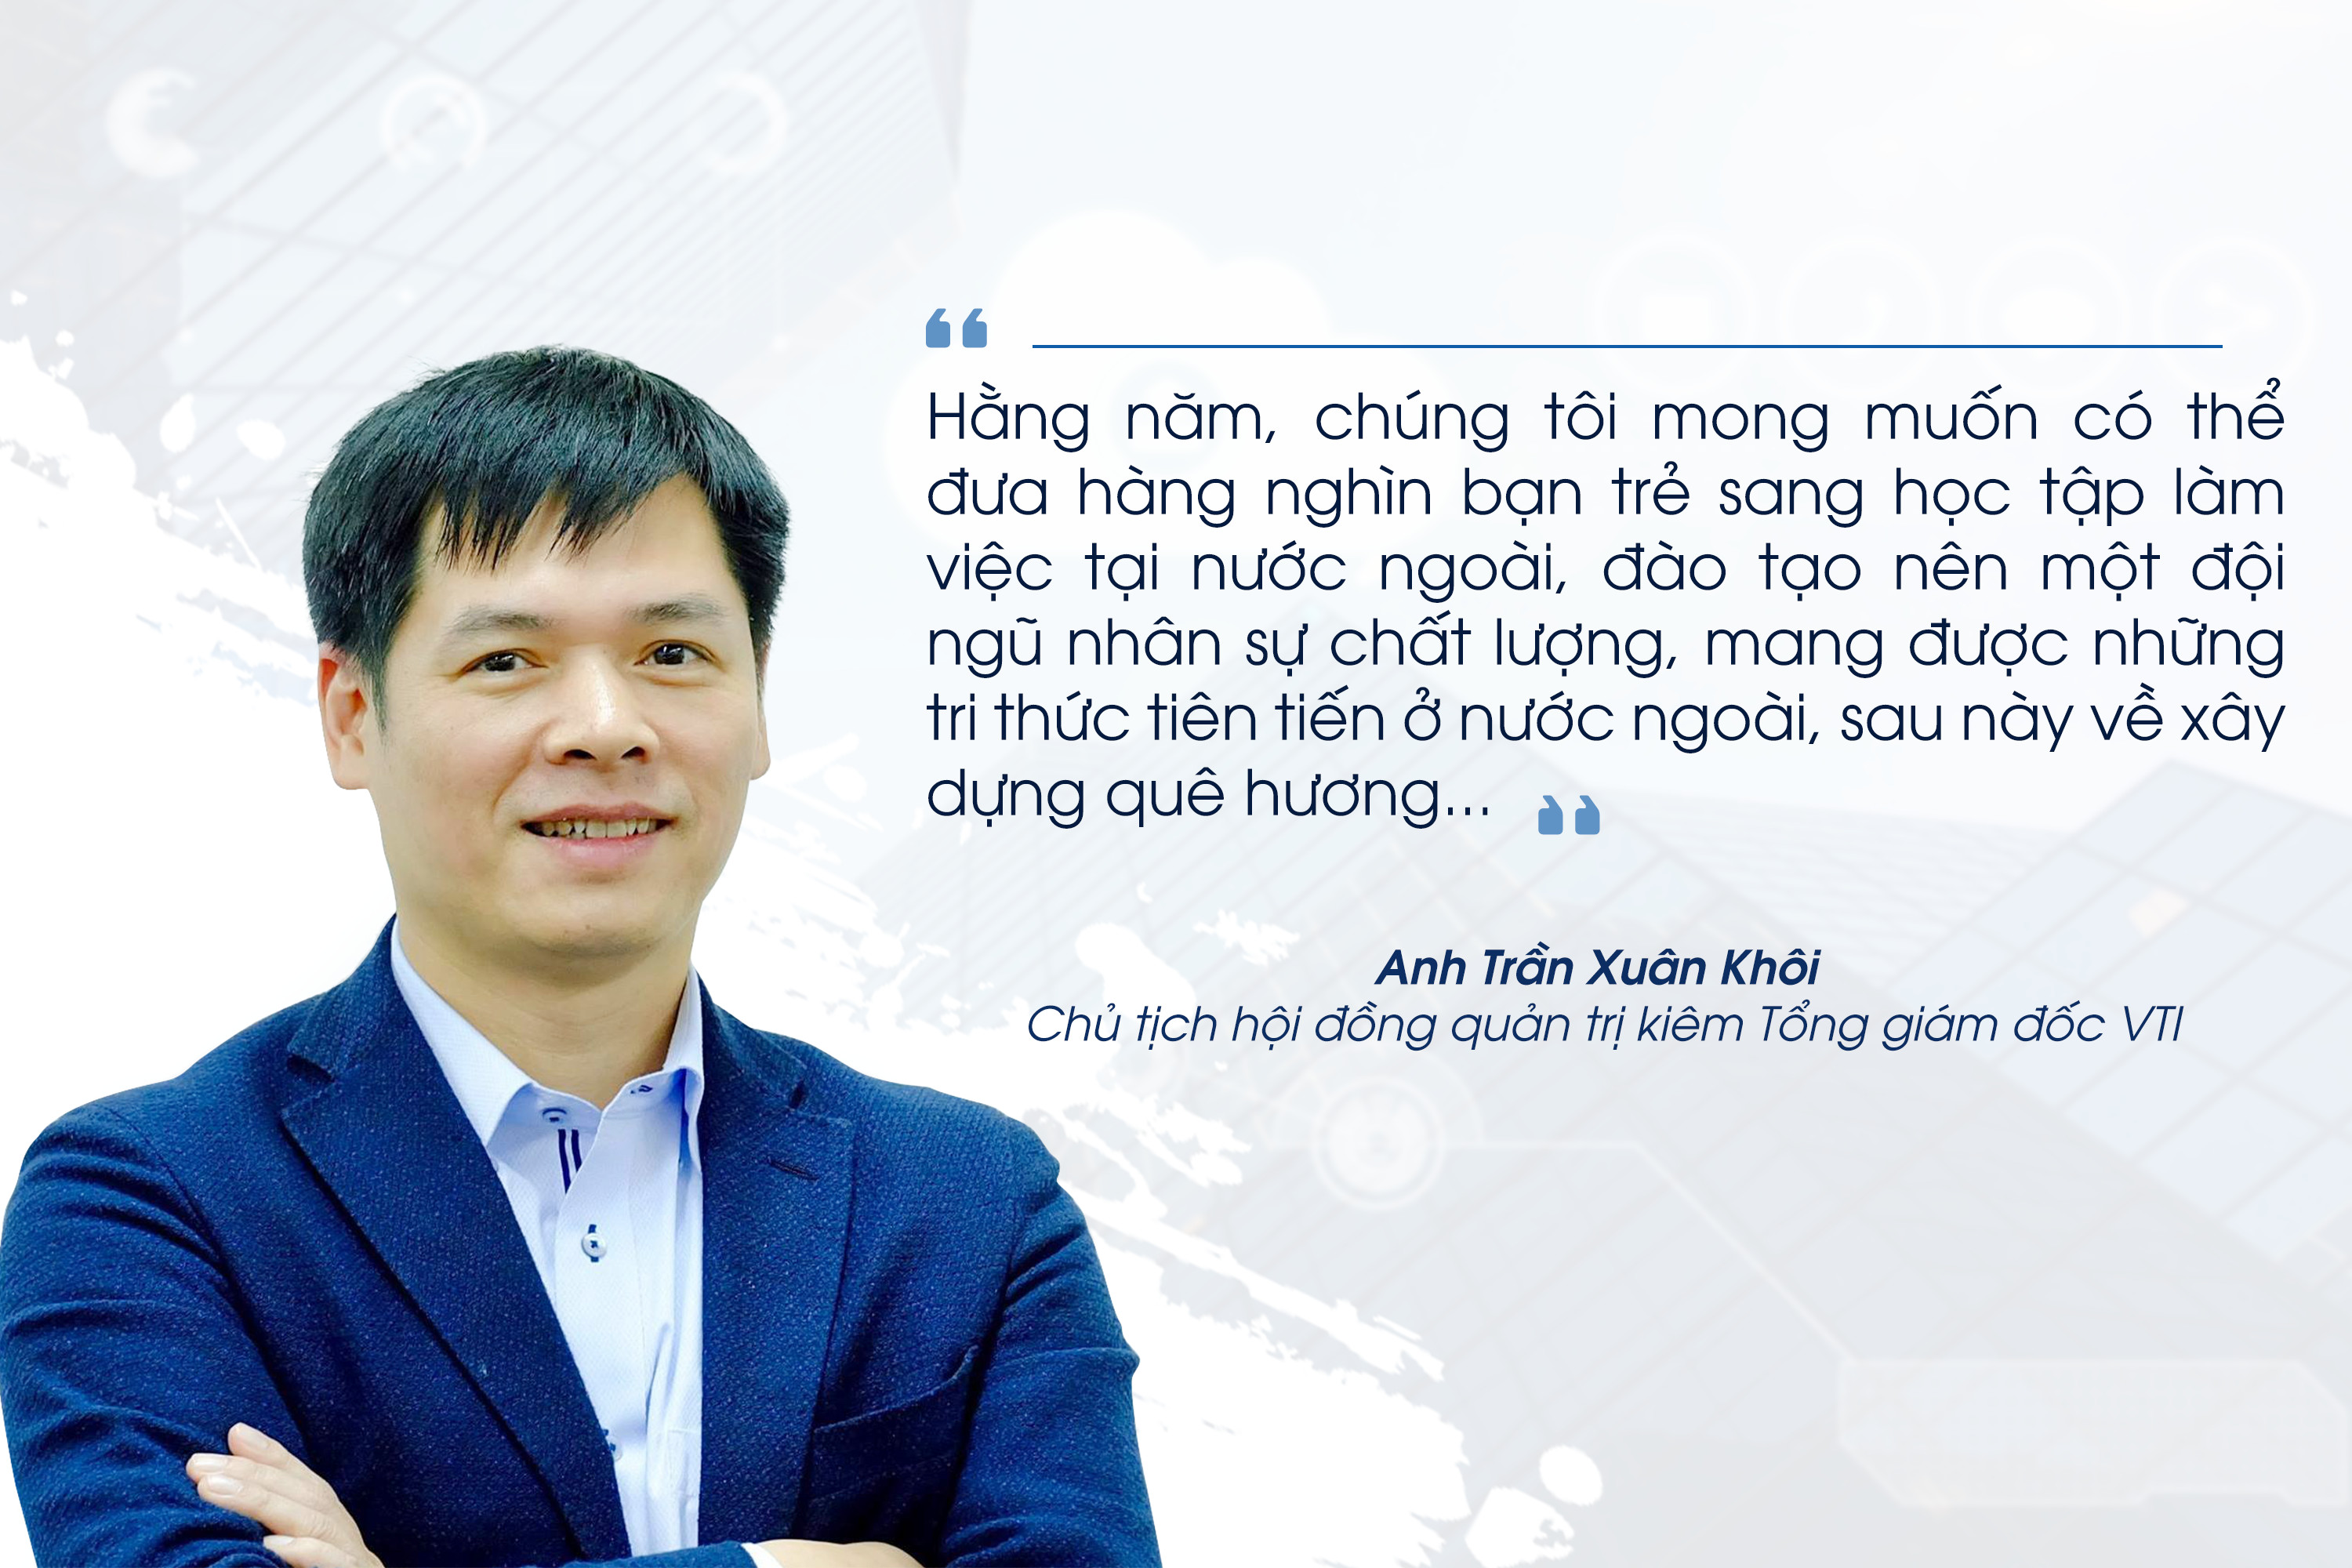 Khát vọng của Chủ tịch Trần Xuân Khôi không chỉ là nâng cao chất lượng đào tạo nhân lực CNTT tại Việt Nam